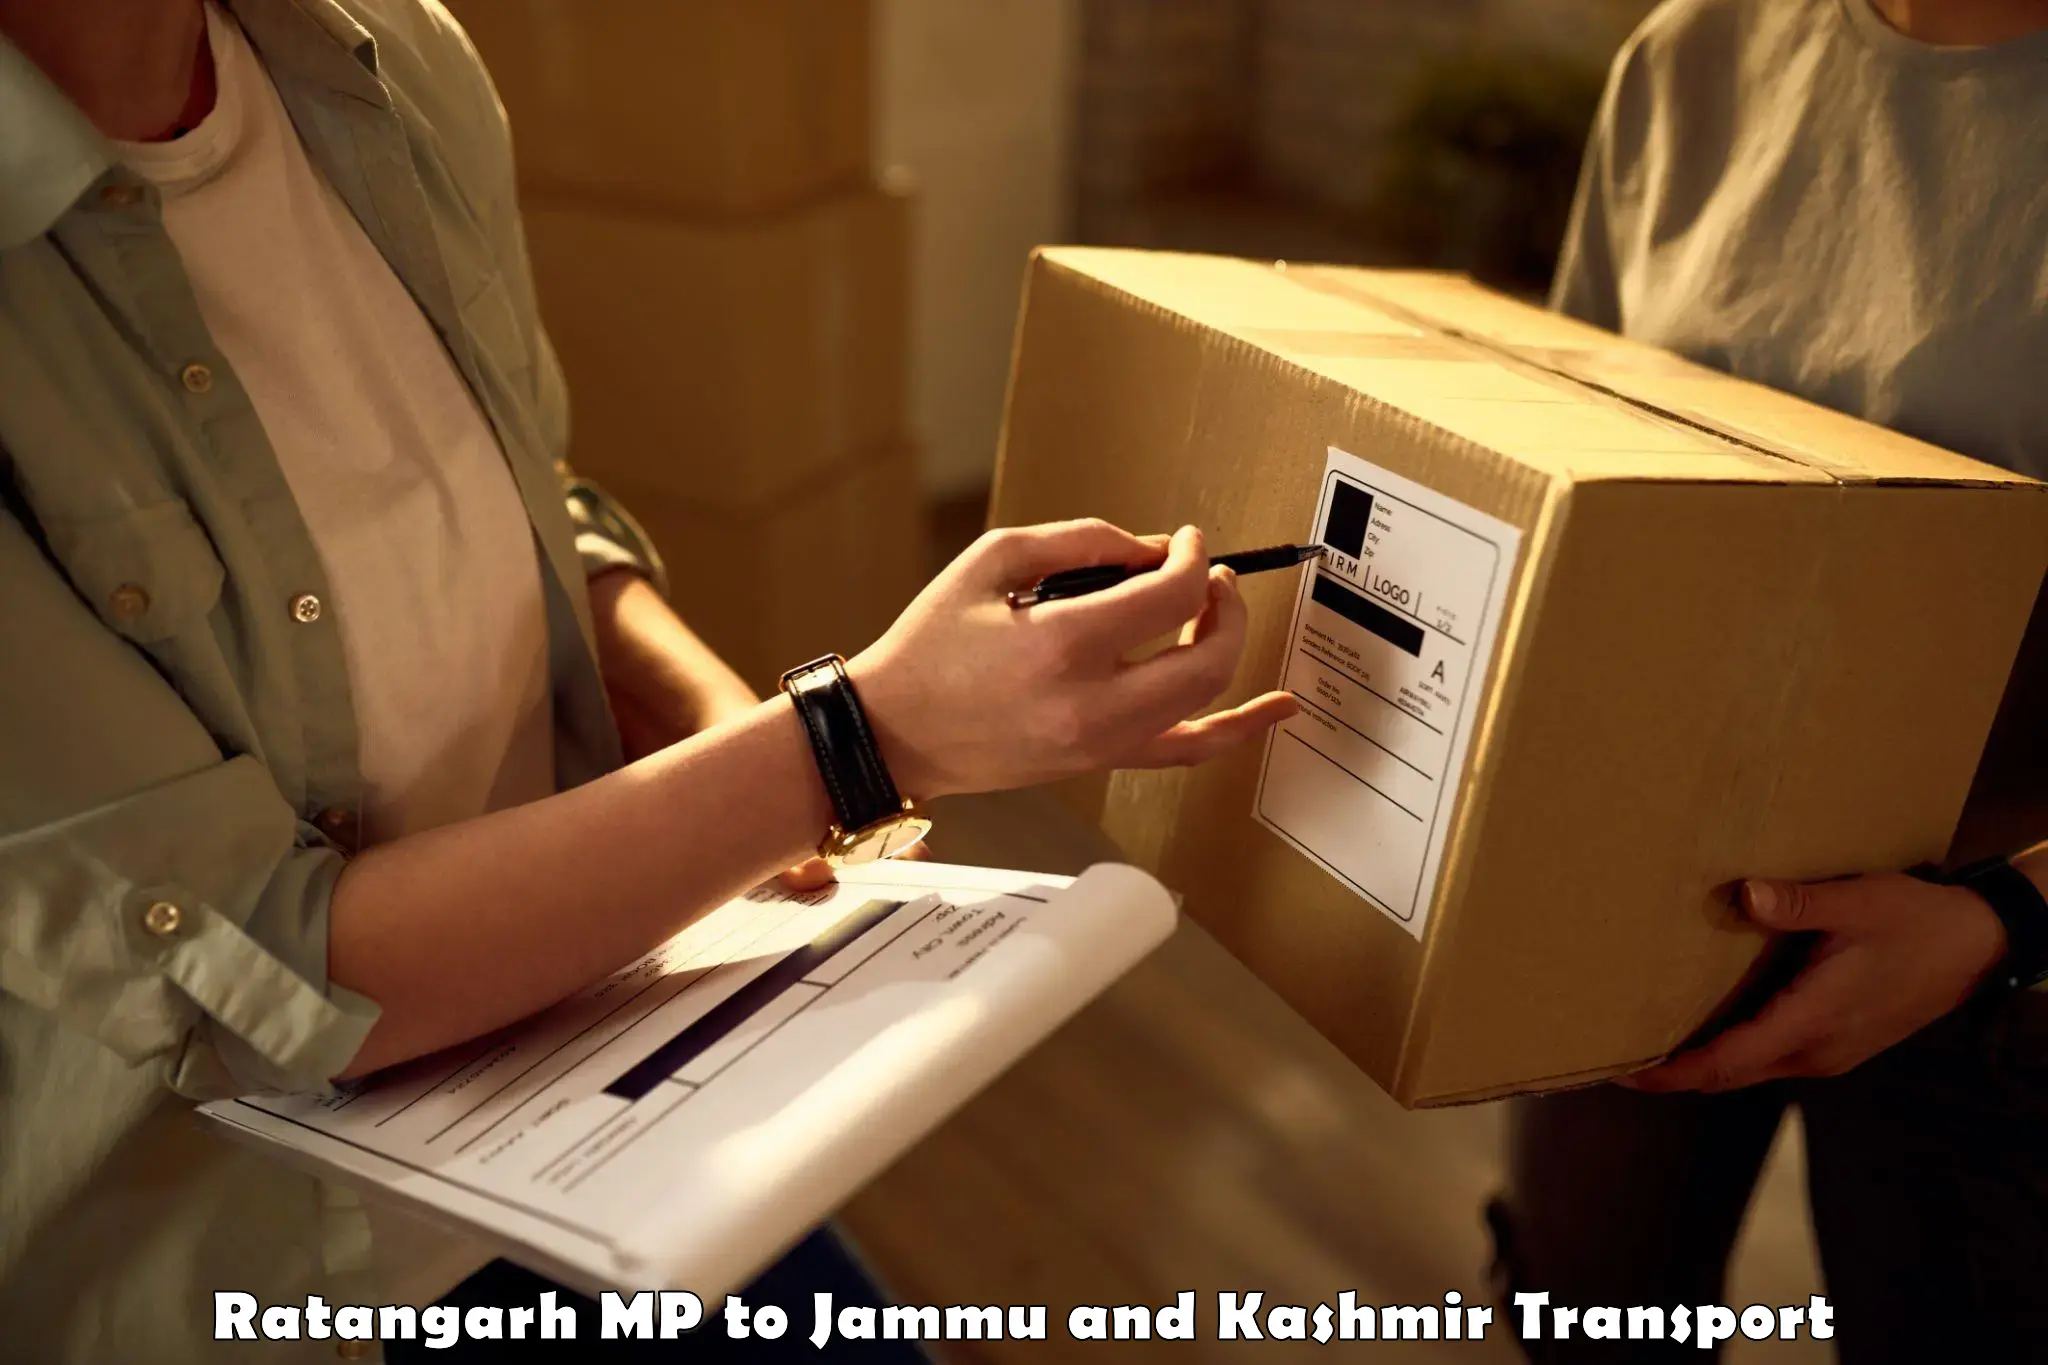 Transportation services Ratangarh MP to Jammu and Kashmir